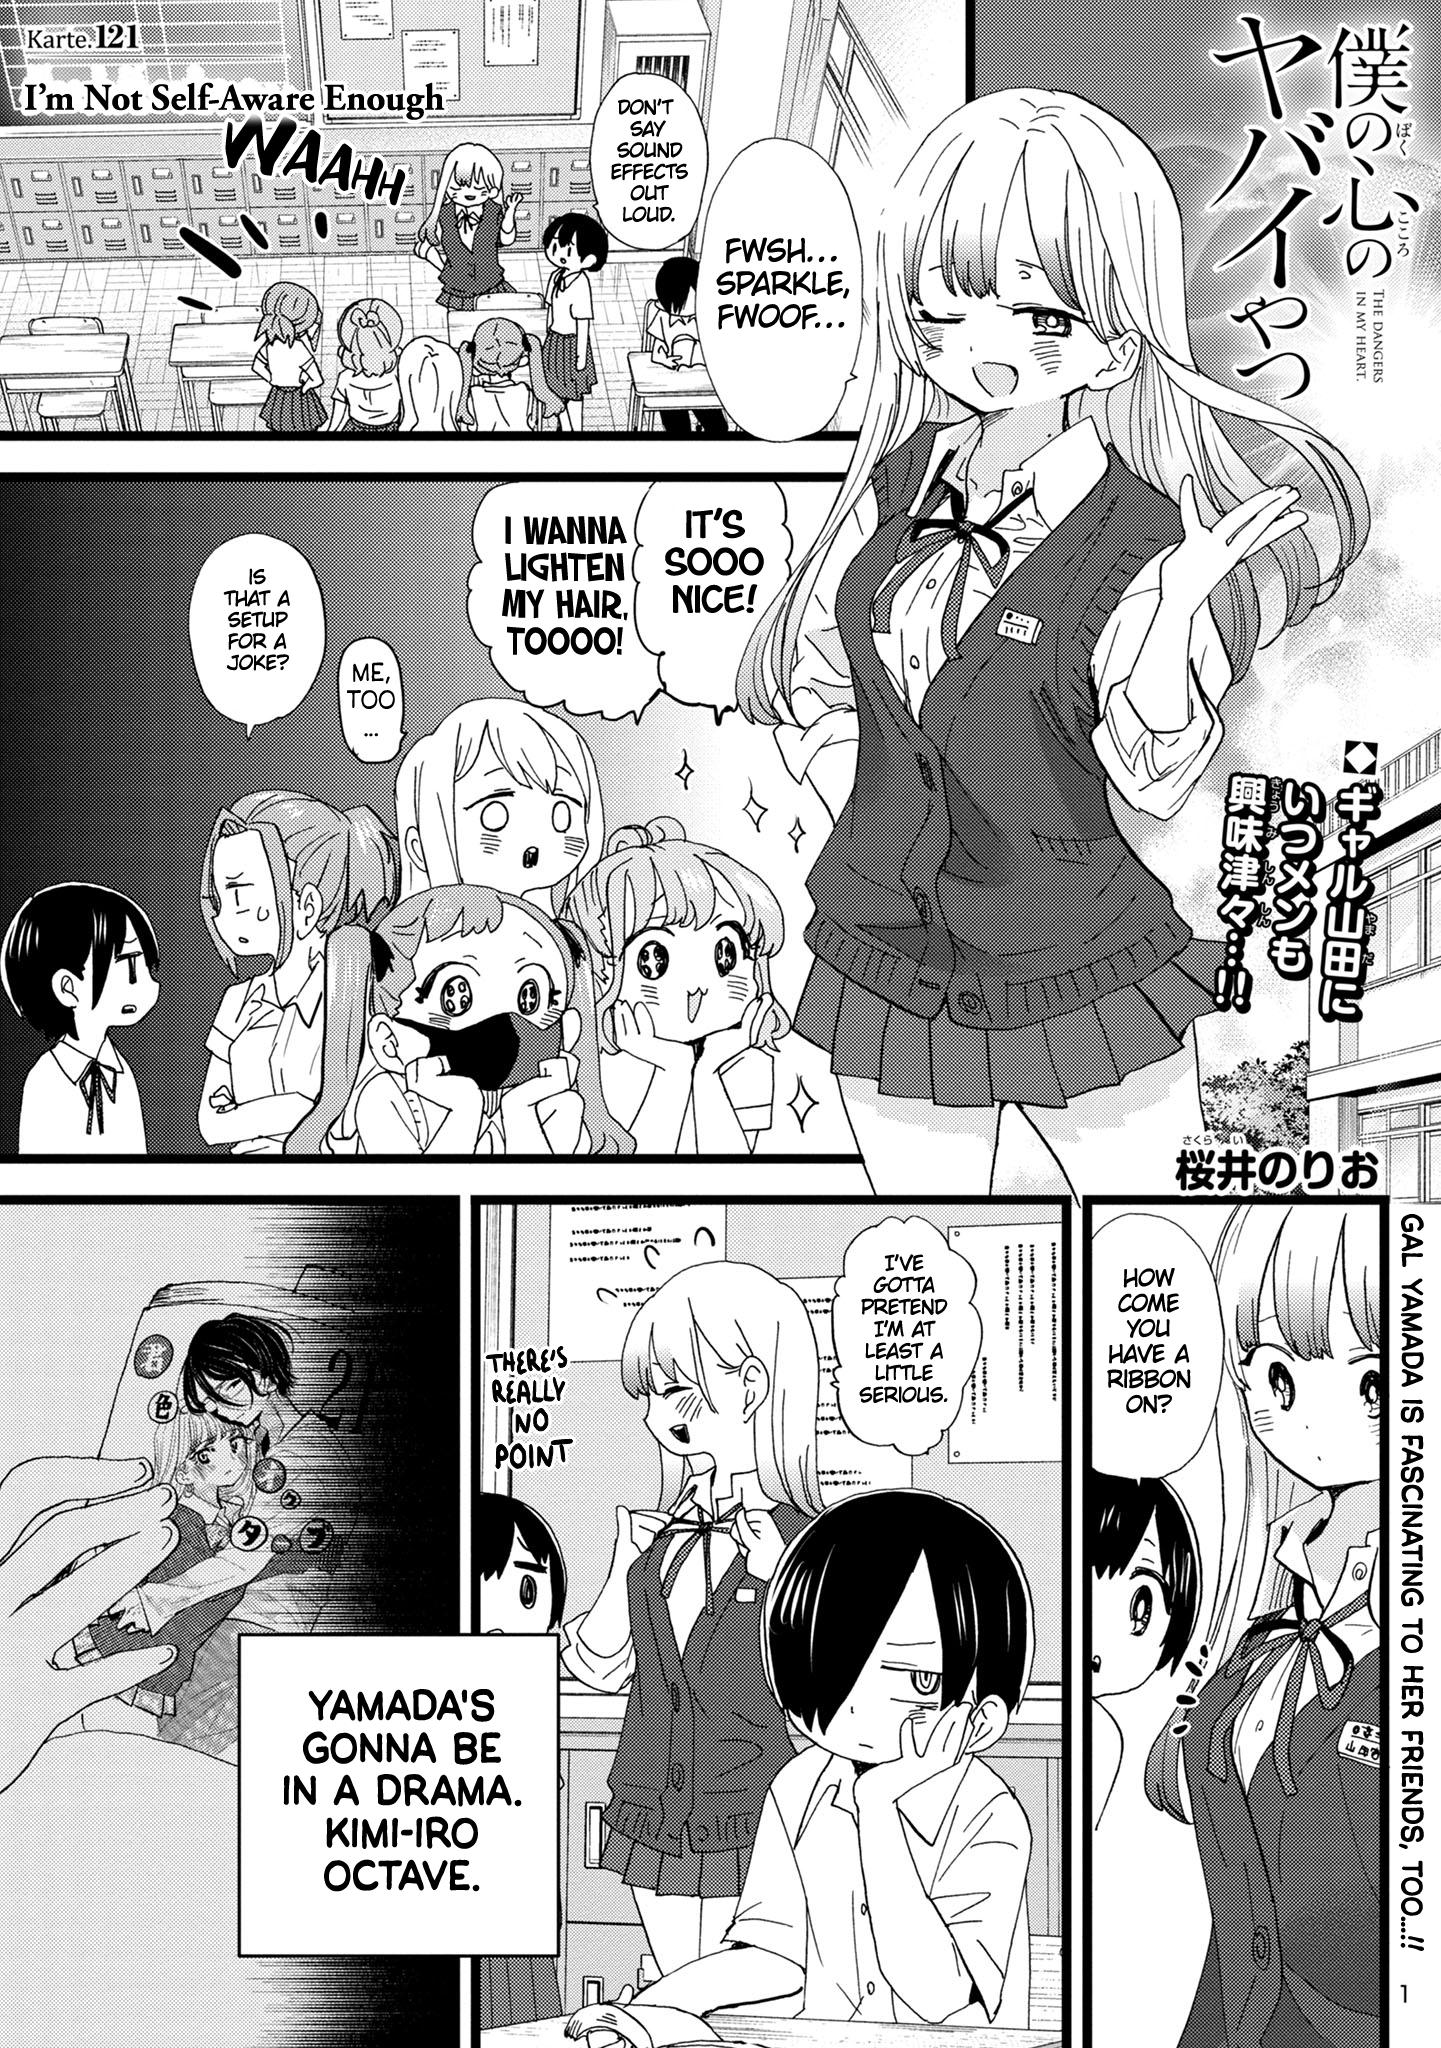 Boku no Kokoro no Yabai Yatsu Vol.3 Ch.39 Page 1 - Mangago